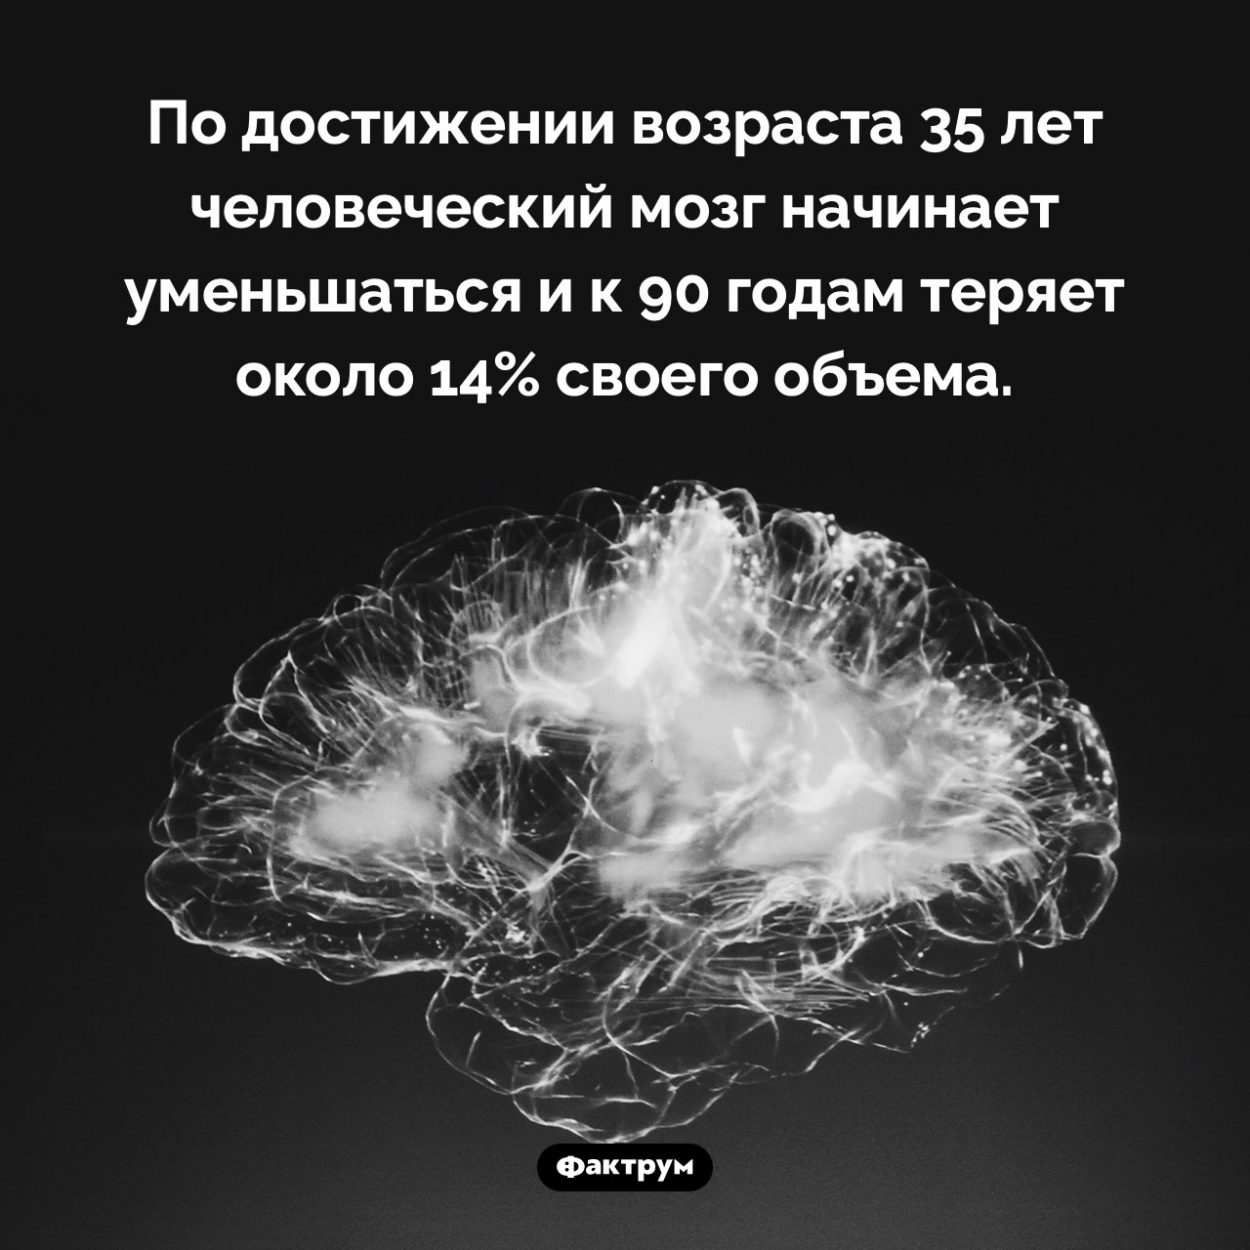 Что происходит с мозгом по мере старения. По достижении возраста 35 лет человеческий мозг начинает уменьшаться и к 90 годам теряет около 14% своего объема.